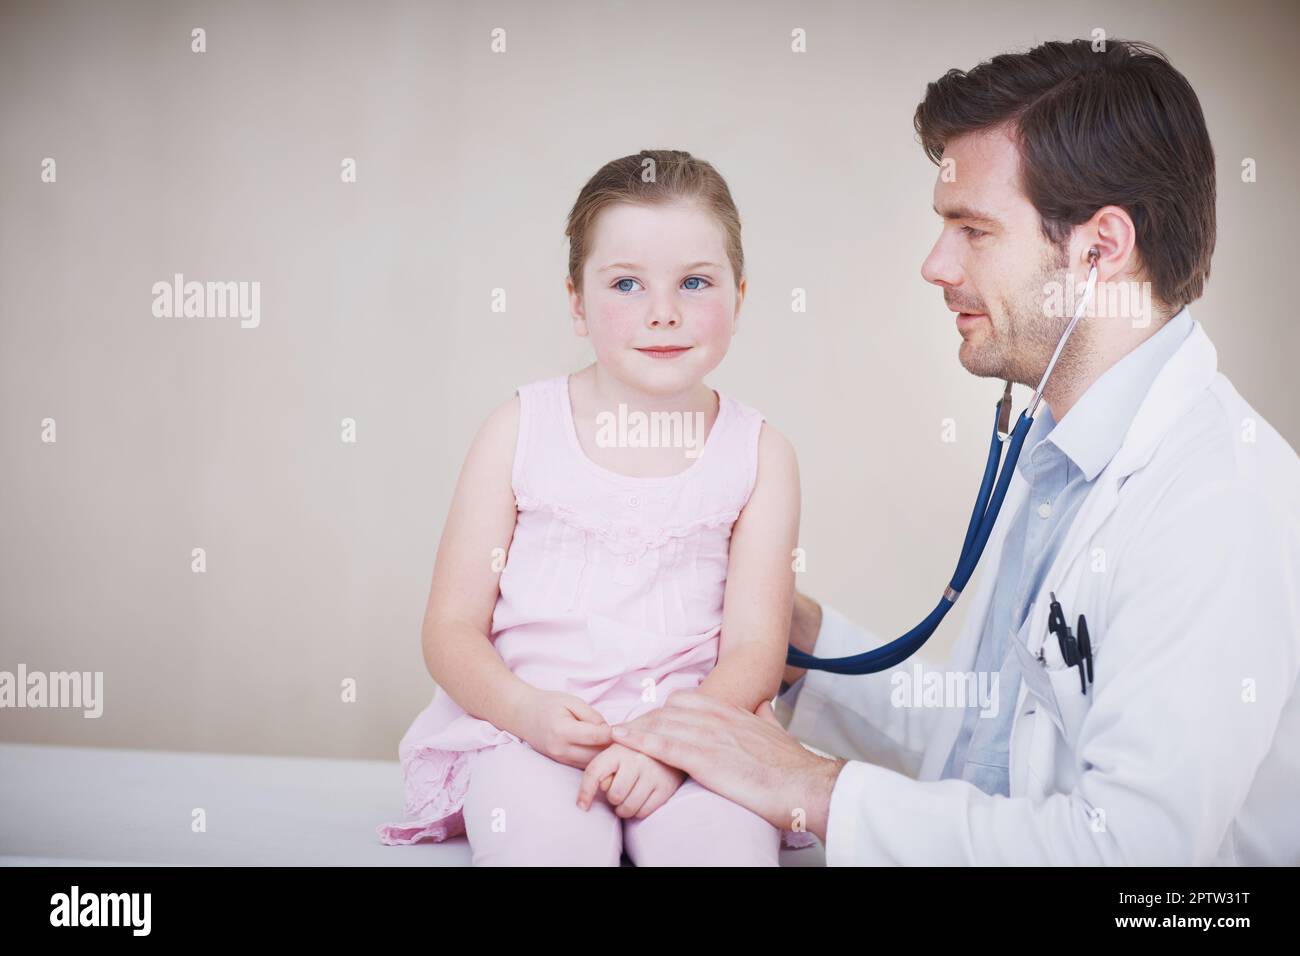 Nur eine kurze Untersuchung. Ein männlicher Arzt, der eine allgemeine medizinische Untersuchung eines kleinen Mädchens mit seinem Stethoskop durchführt Stockfoto